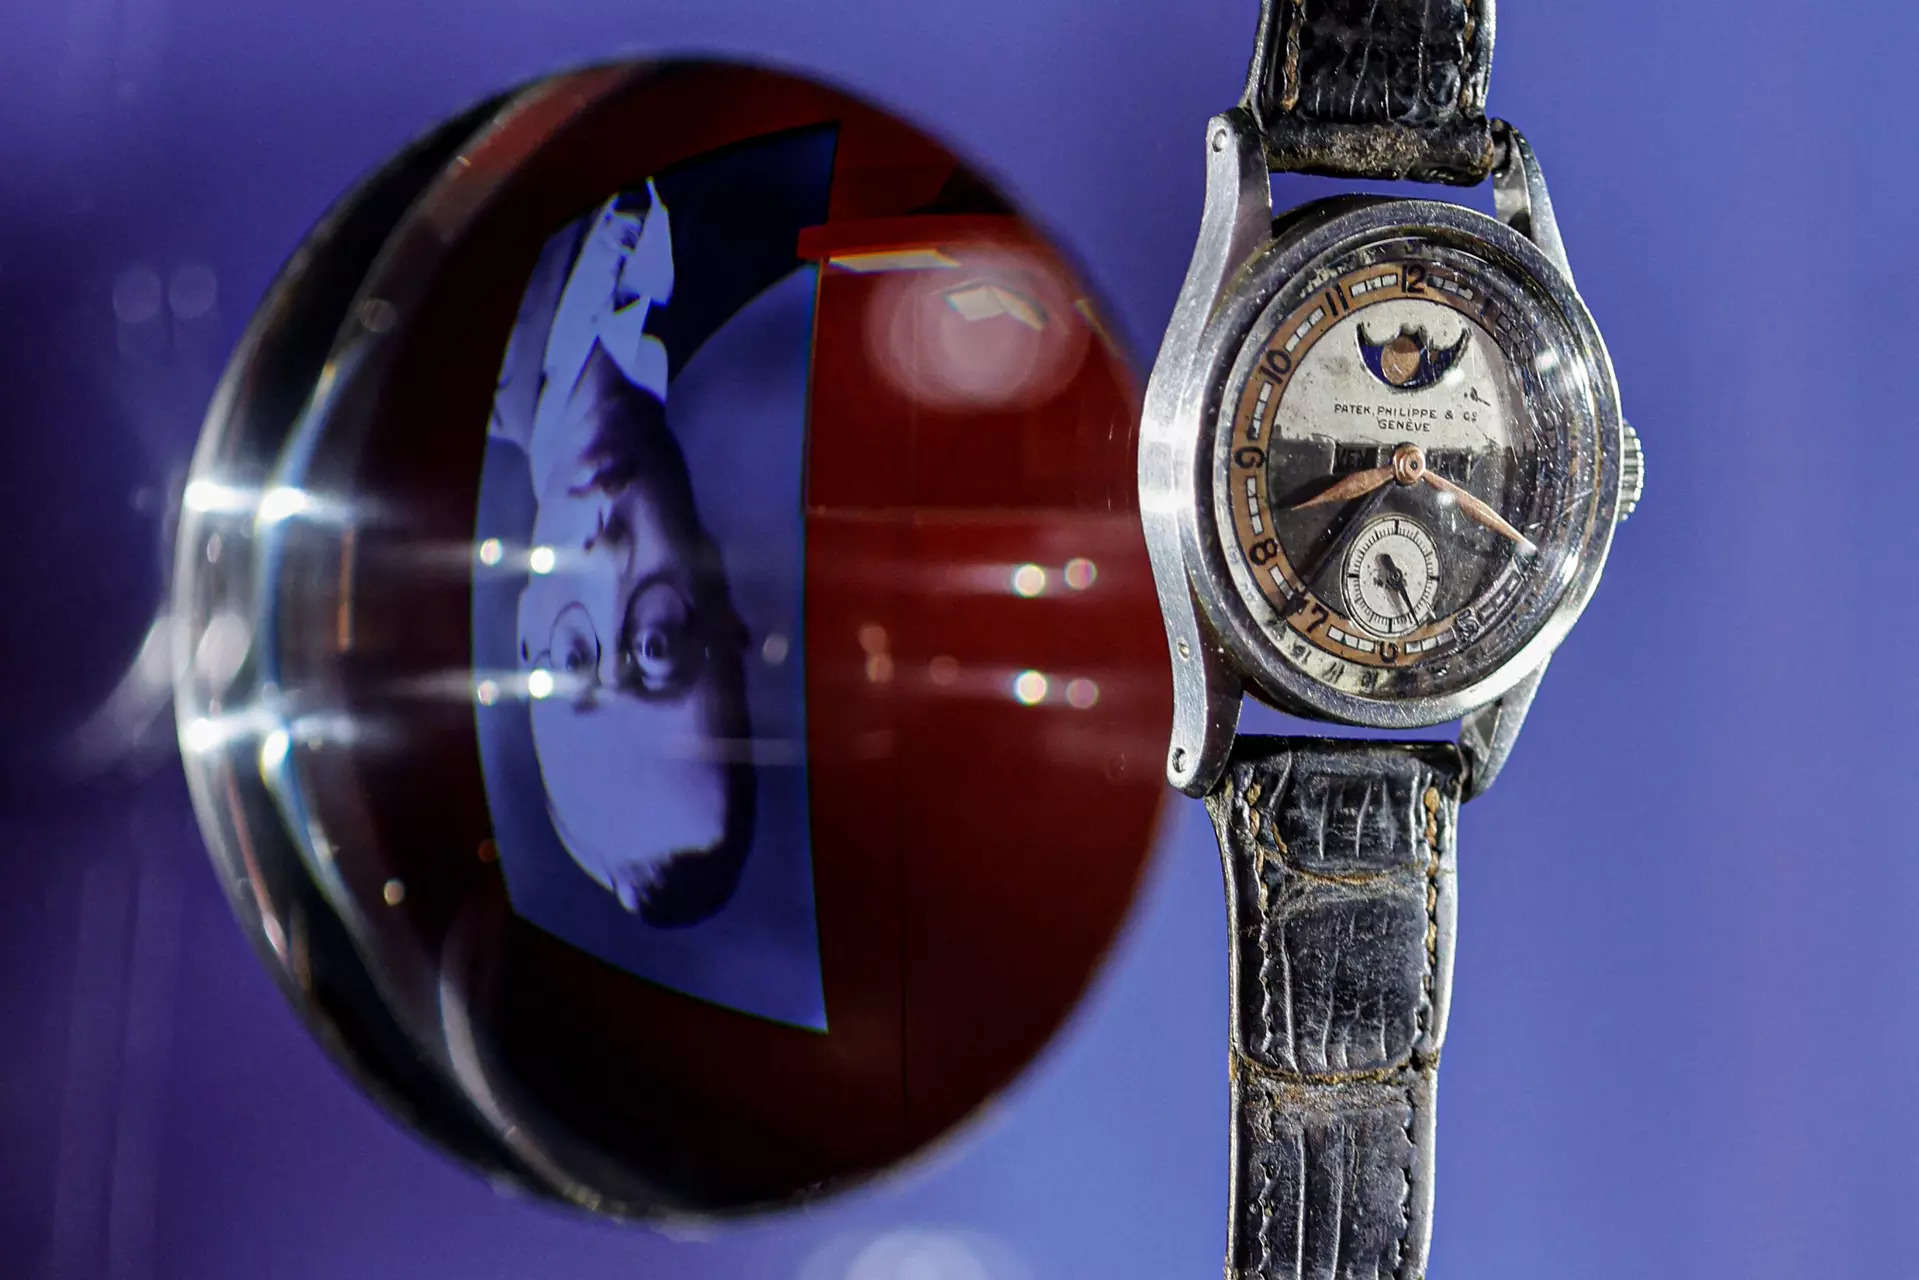 Çin'in son imparatoruna ait saat 5 milyon dolara satıldı